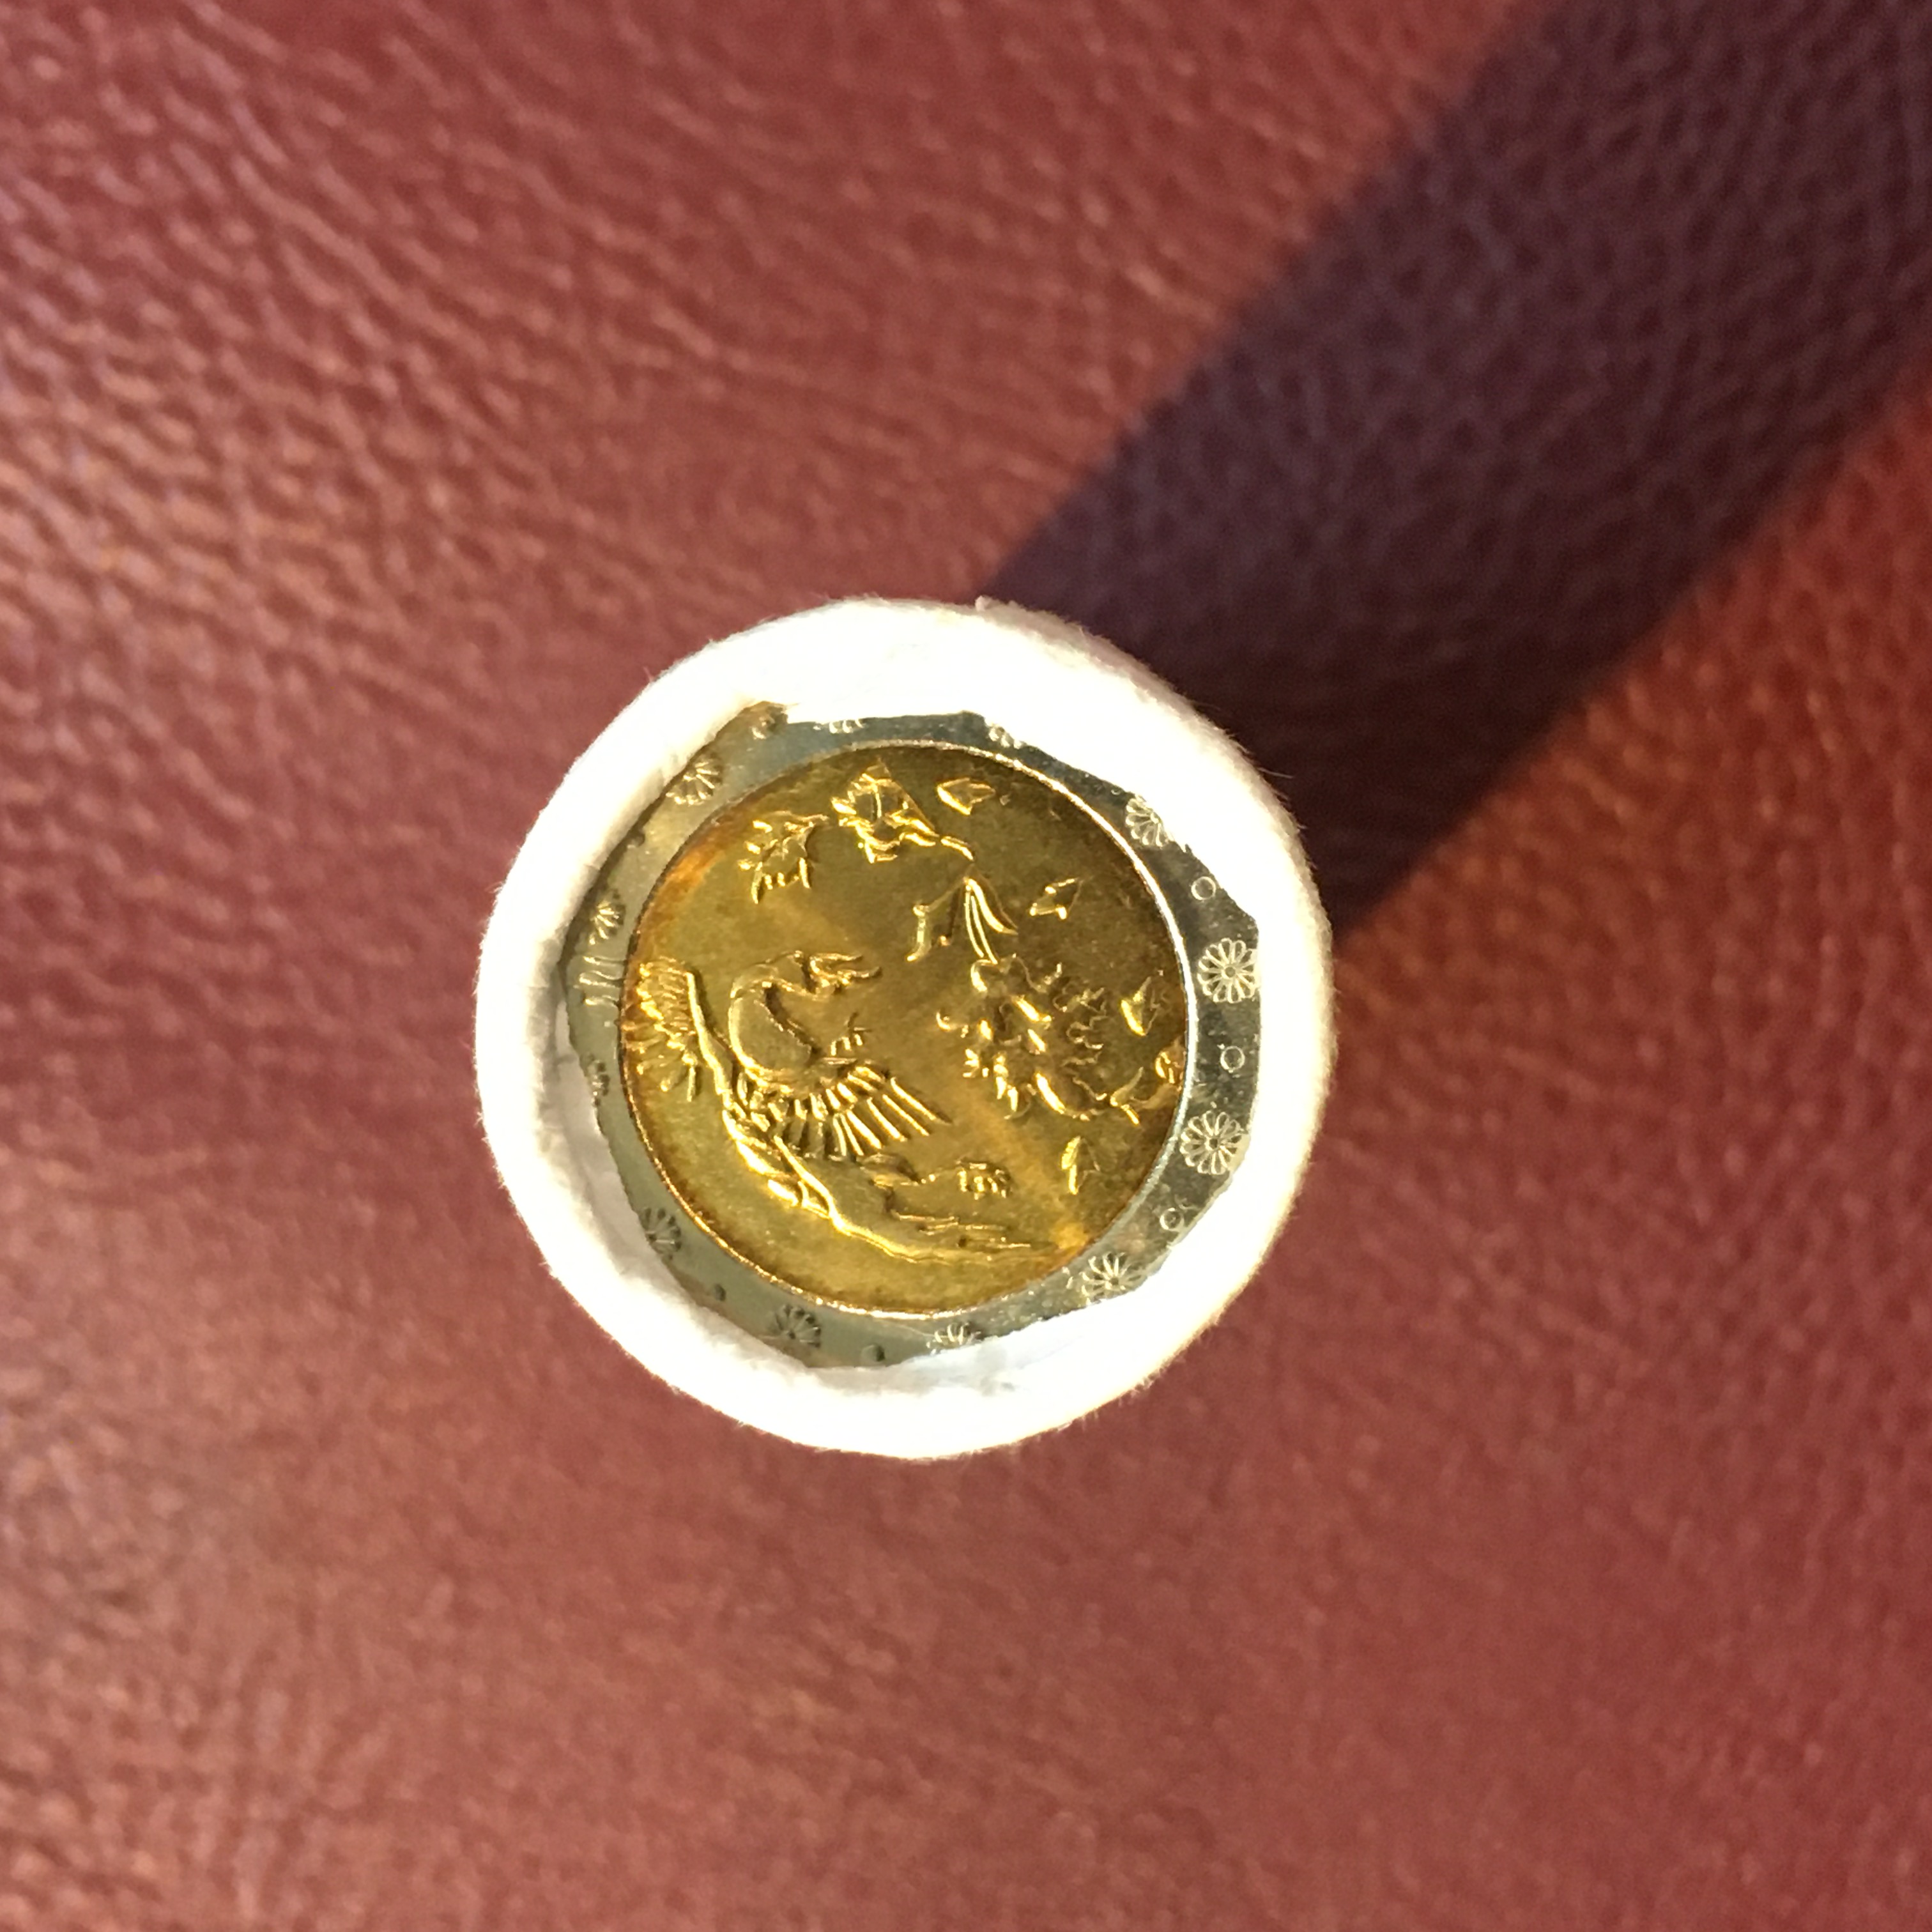 رول سکه بانکی سکه ۵٠٠ ریال دو رنگ کاملا سالم بدون چسب و پارگی